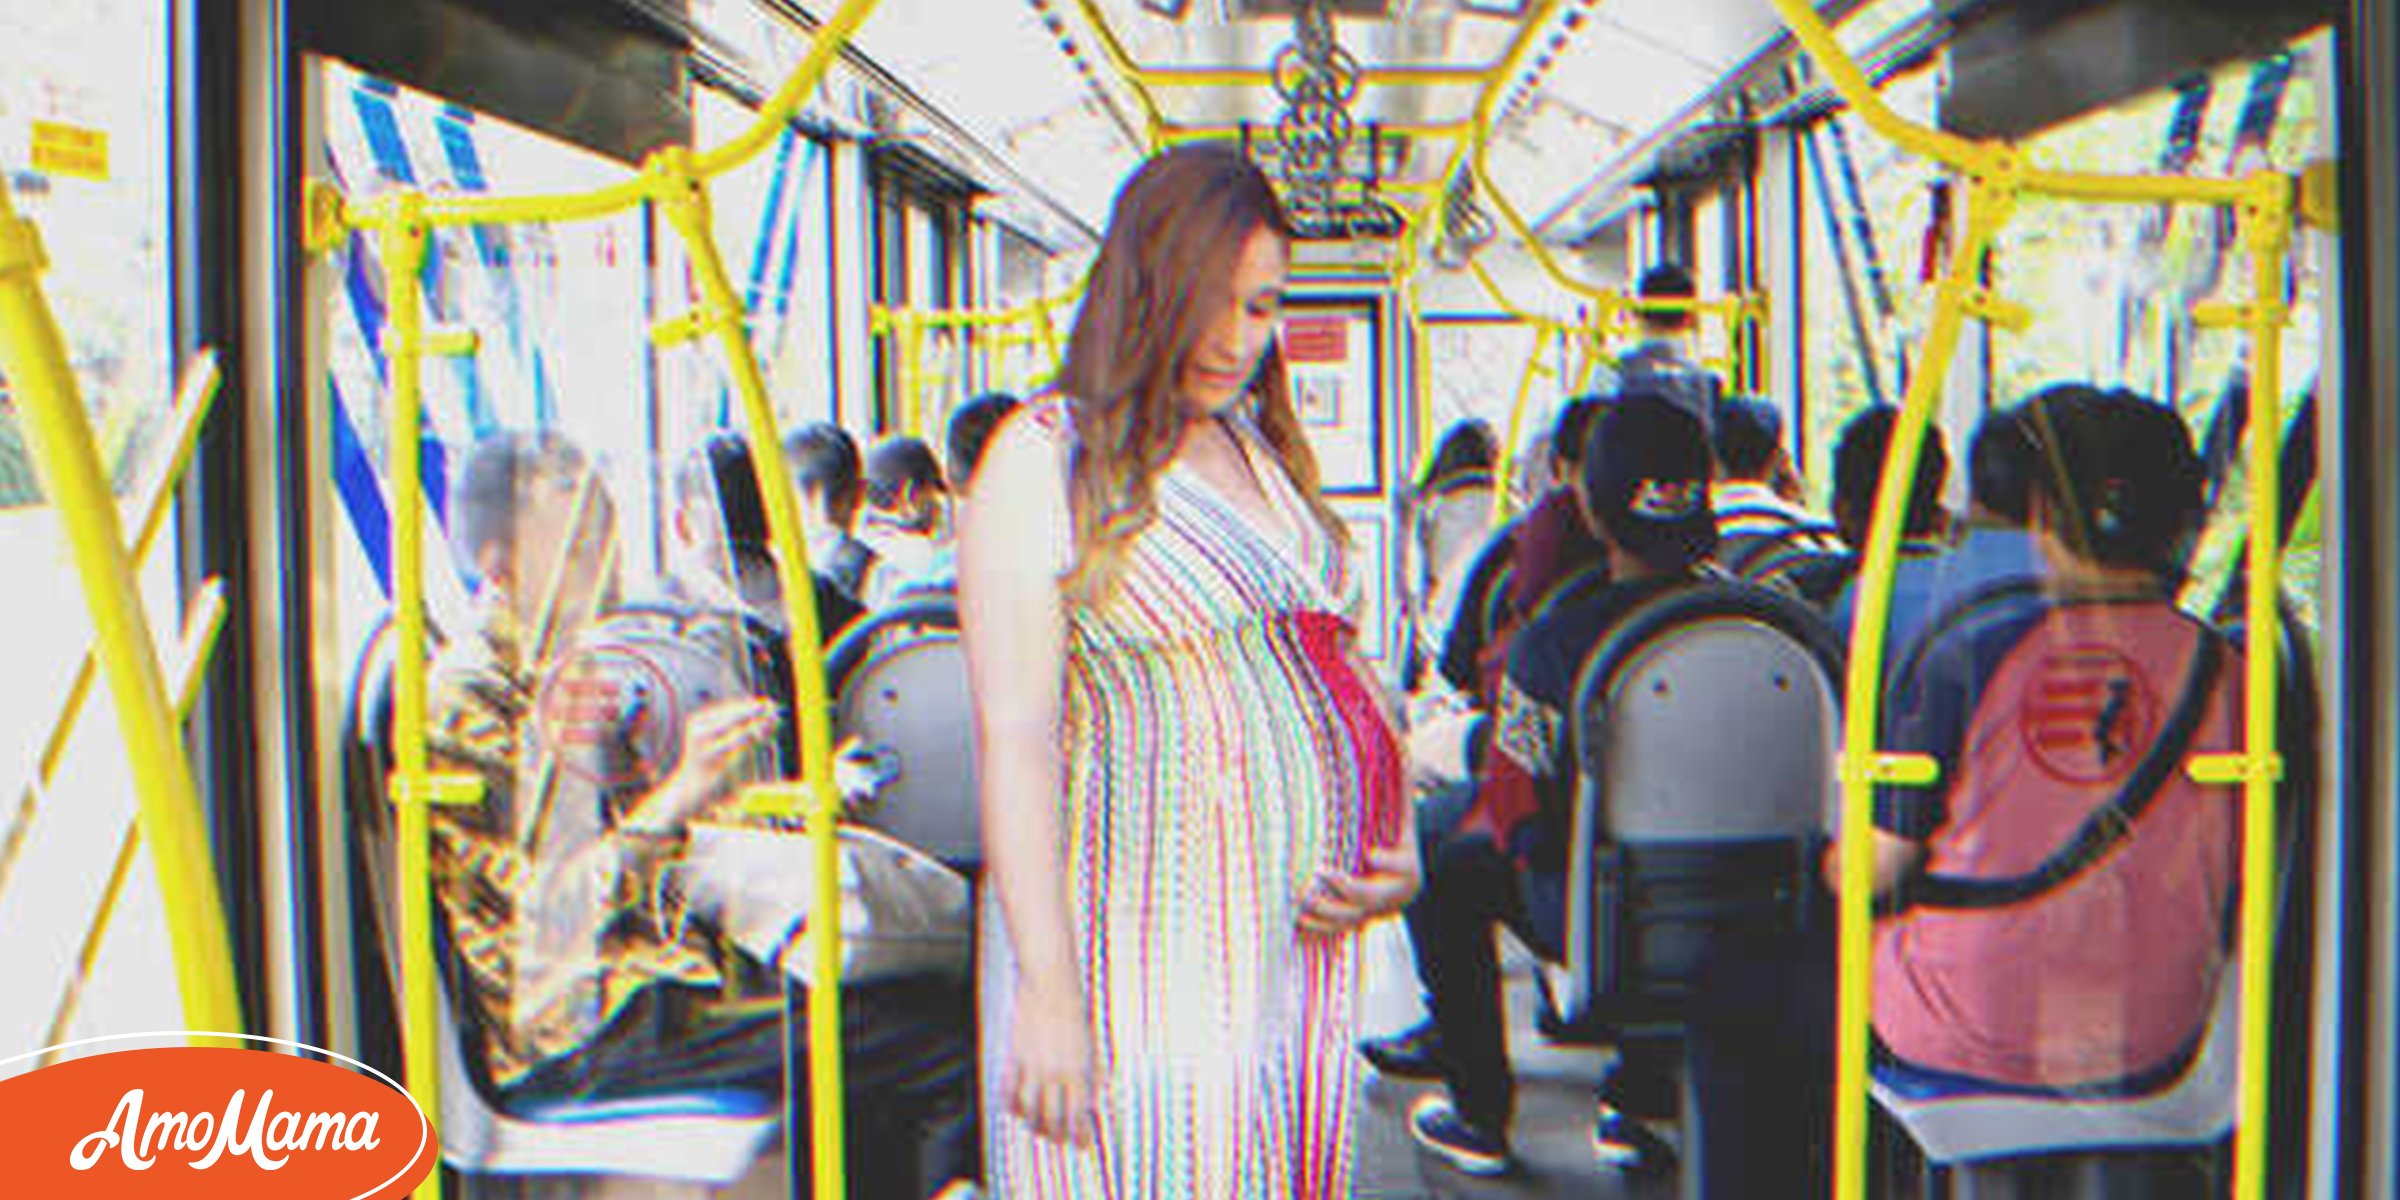 Dans un bus, personne ne veut céder sa place à une femme enceinte. À l’arrêt suivant, tout le monde se fait expulser sauf elle – Histoire du jour